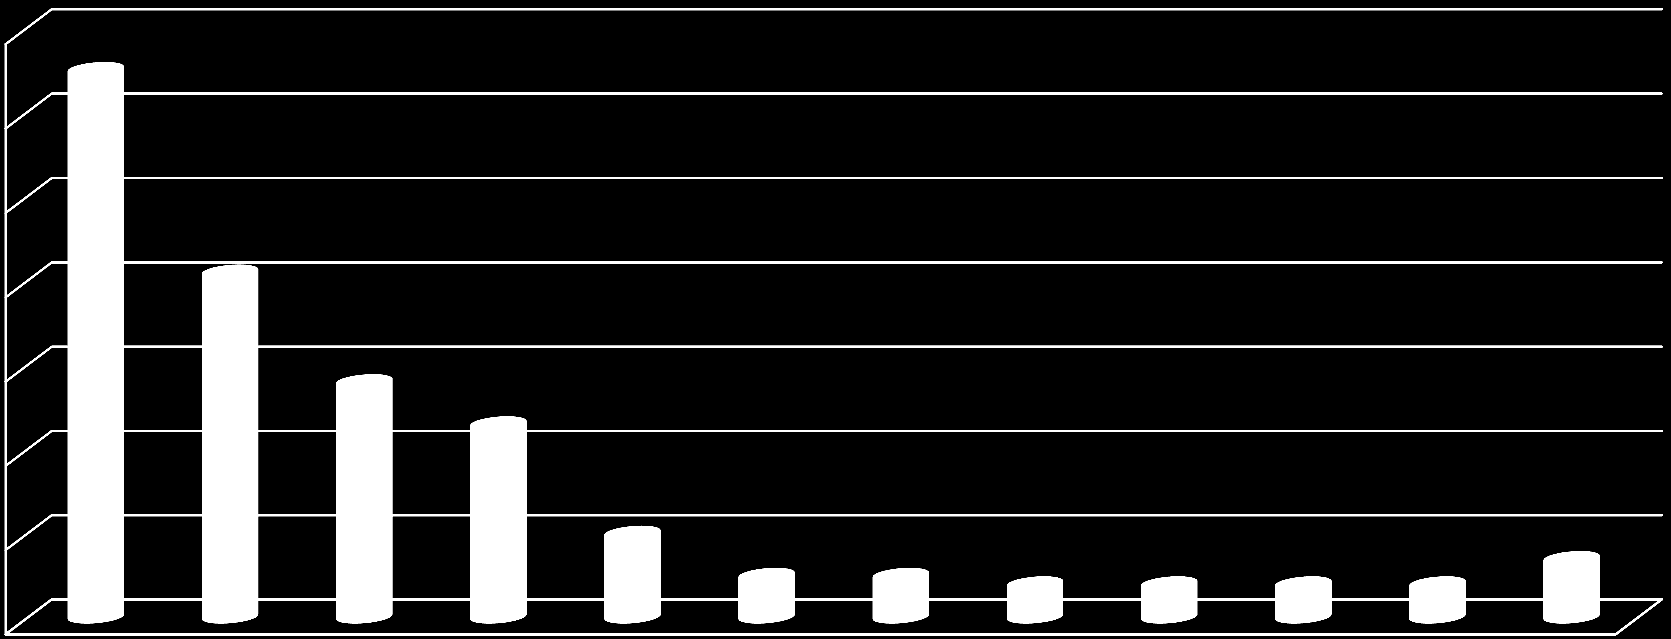 VOLEBNÍ MODEL DUBEN-KVĚTEN 2012 Volební model zobrazuje předpokládané výsledky hypotetických voleb do Sněmovny, kdyby se konaly v době dotazování.